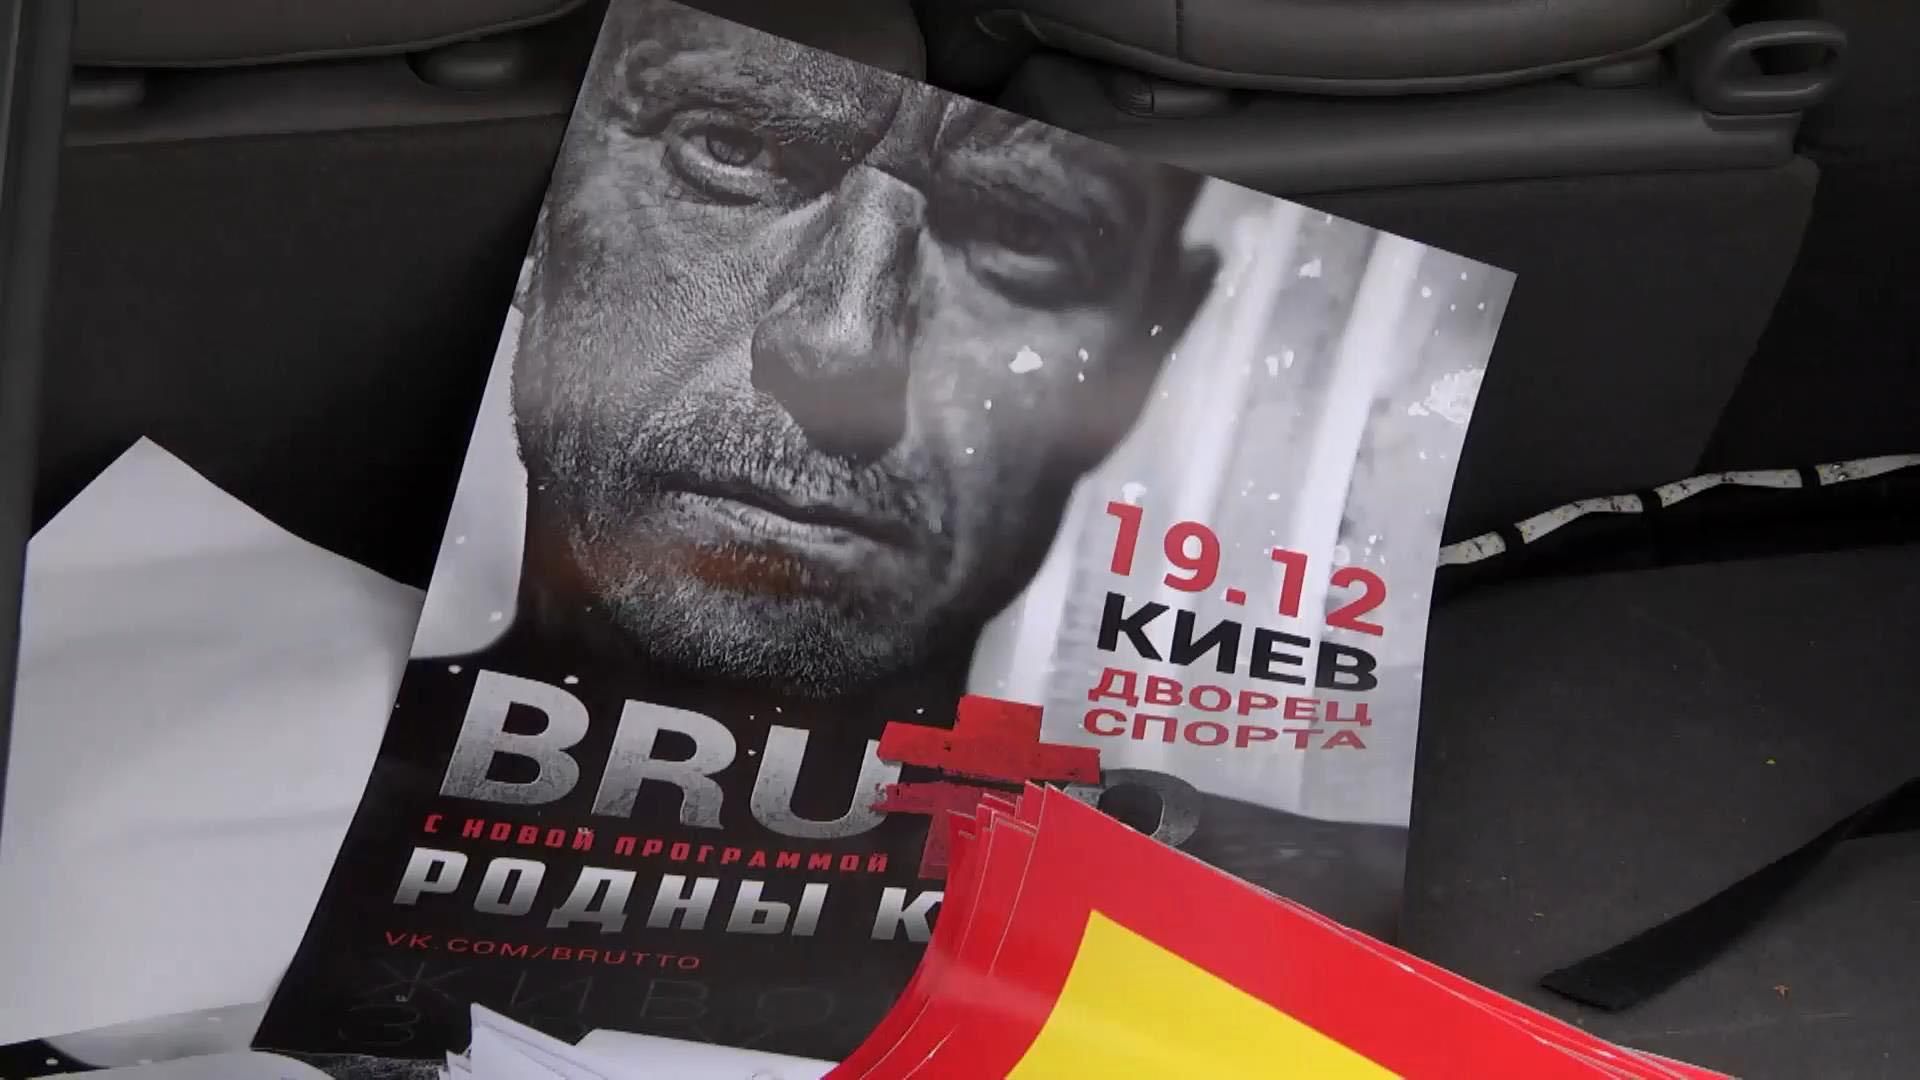 Фаны группы "Brutto" устроили автопробег по Киеву